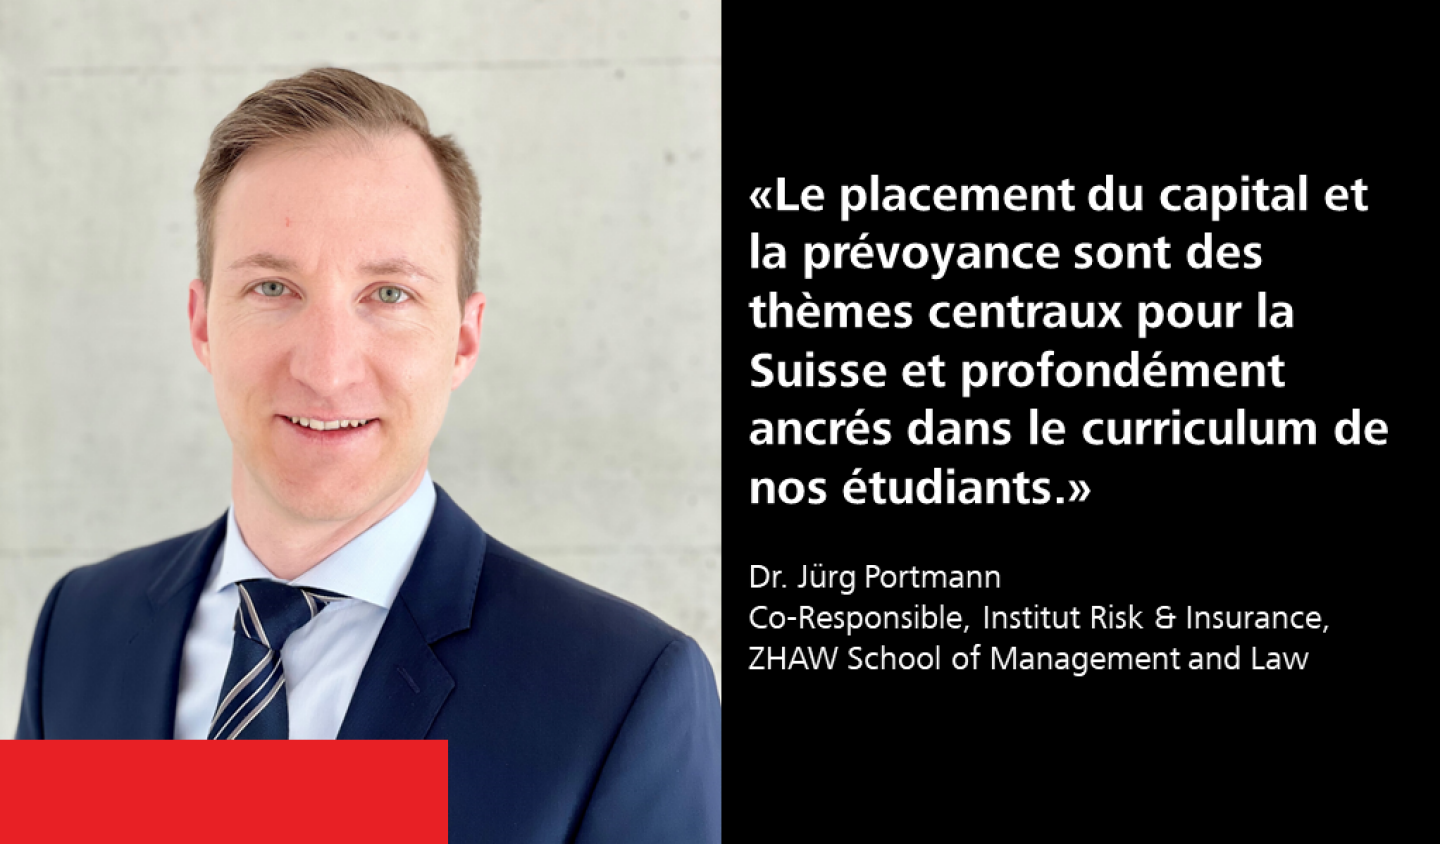 Le placement du capital et la prévoyance sont des thèmes centraux pour la Suisse et profondément ancrés dans le curriculum de nos étudiants.